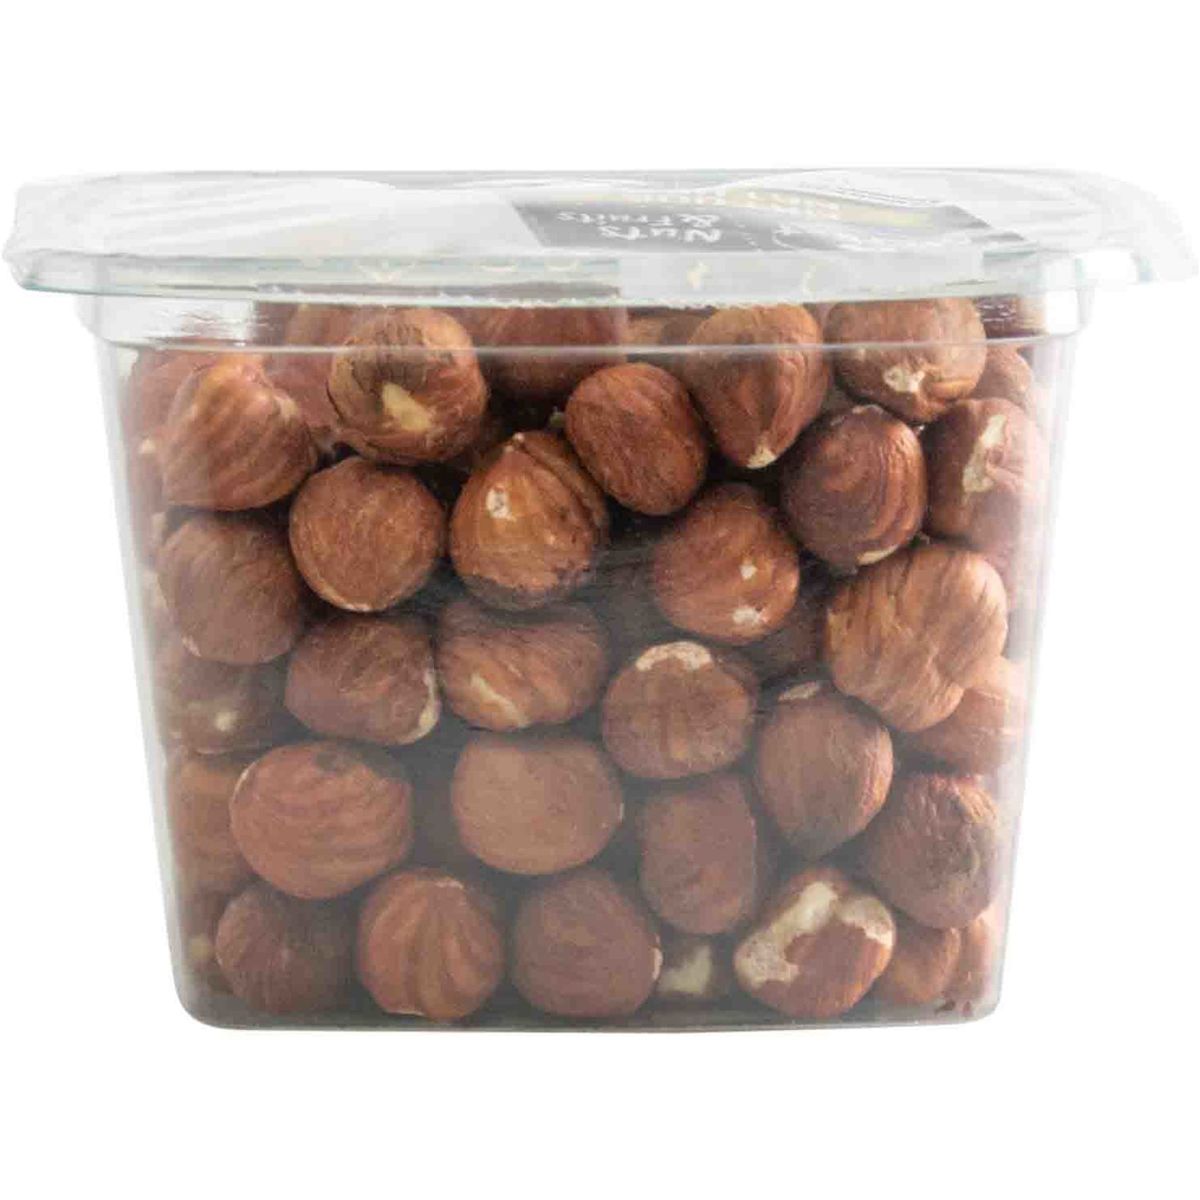 Carrefour The Market Nuts & Fruits Nature Noisettes Décortiquées 200 g